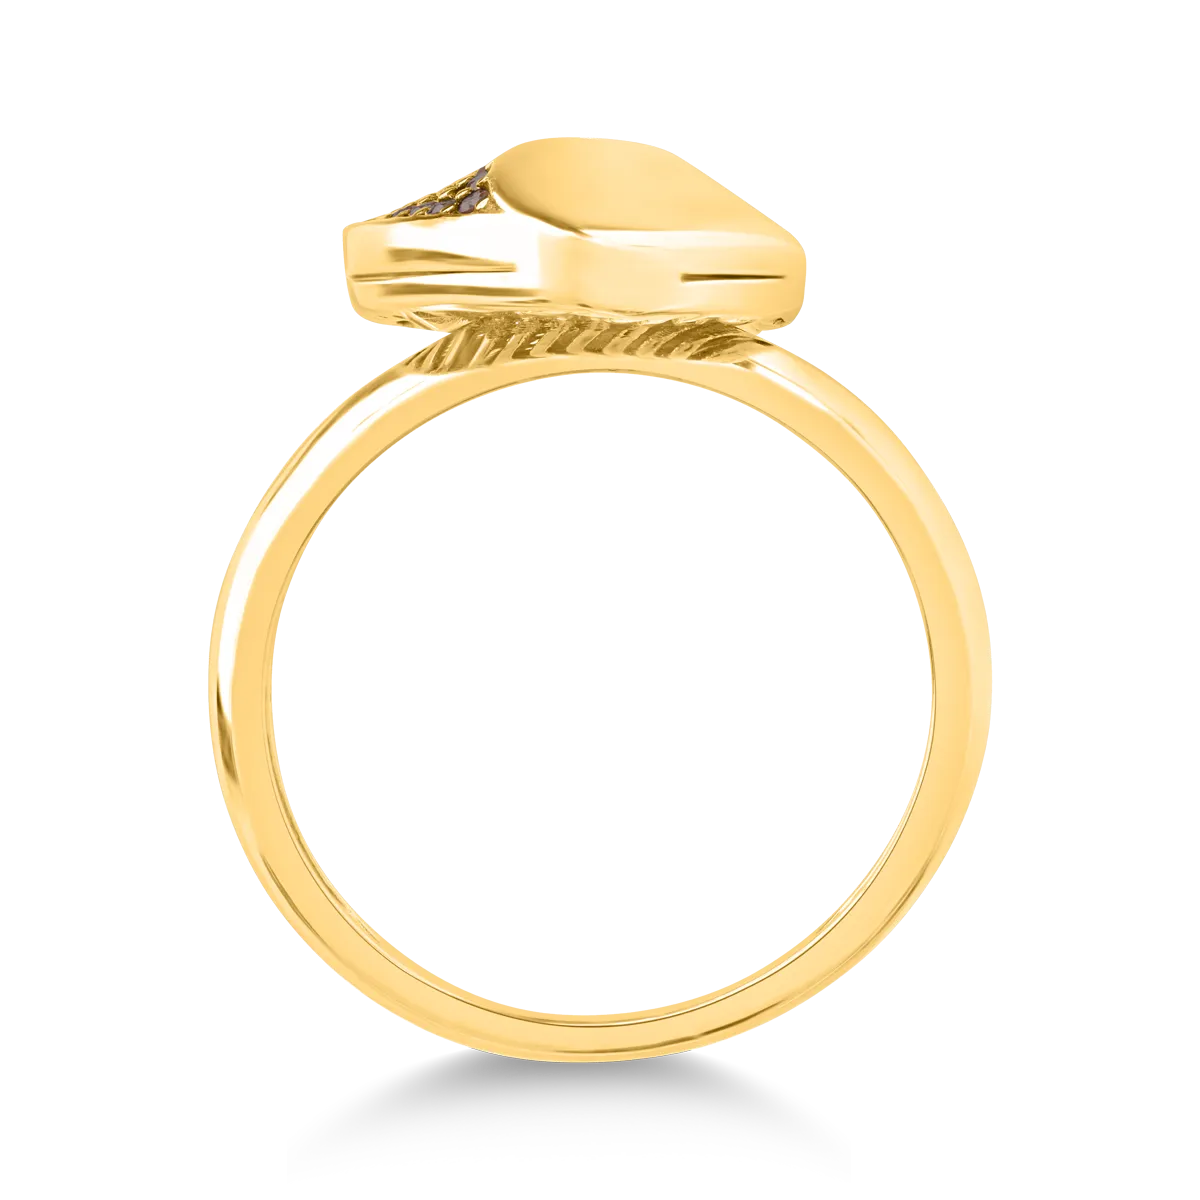 14 karátos sárga arany gyűrű